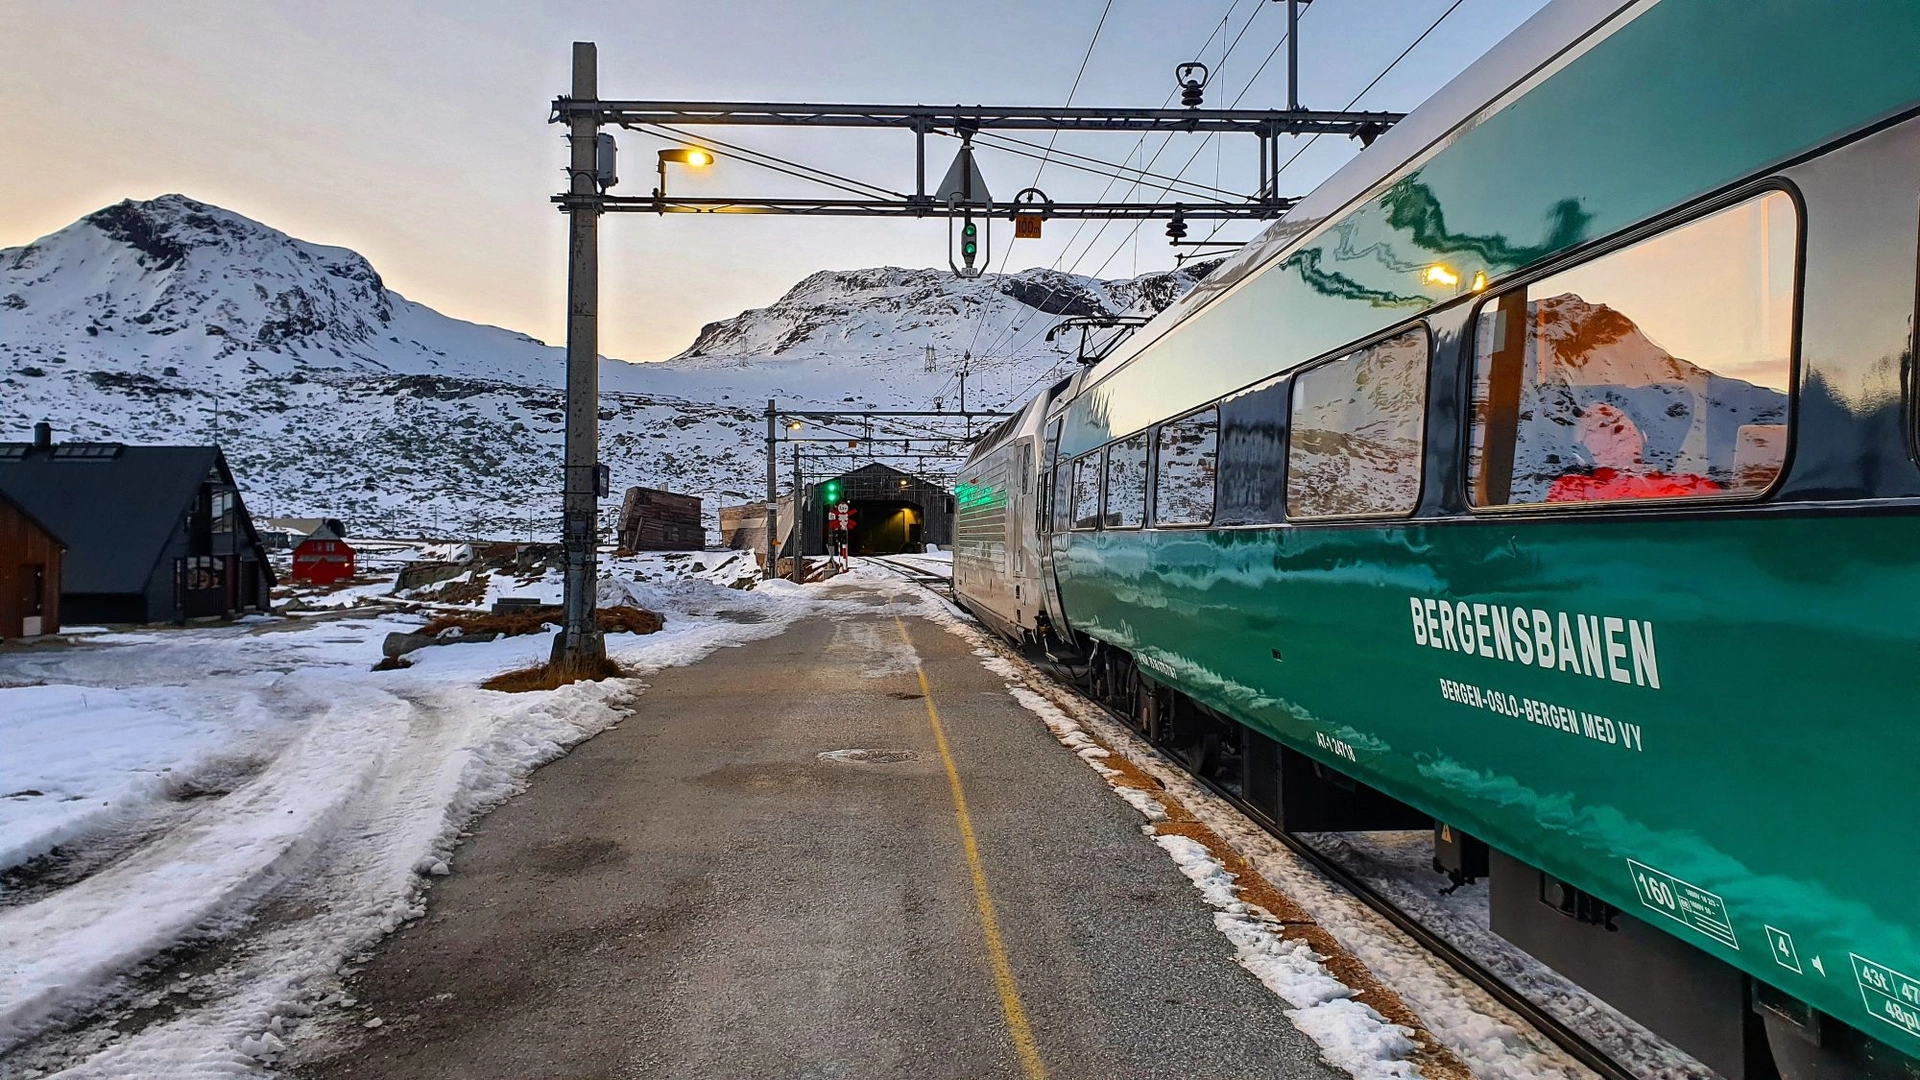 The Bergen Railway on Finse -Norway